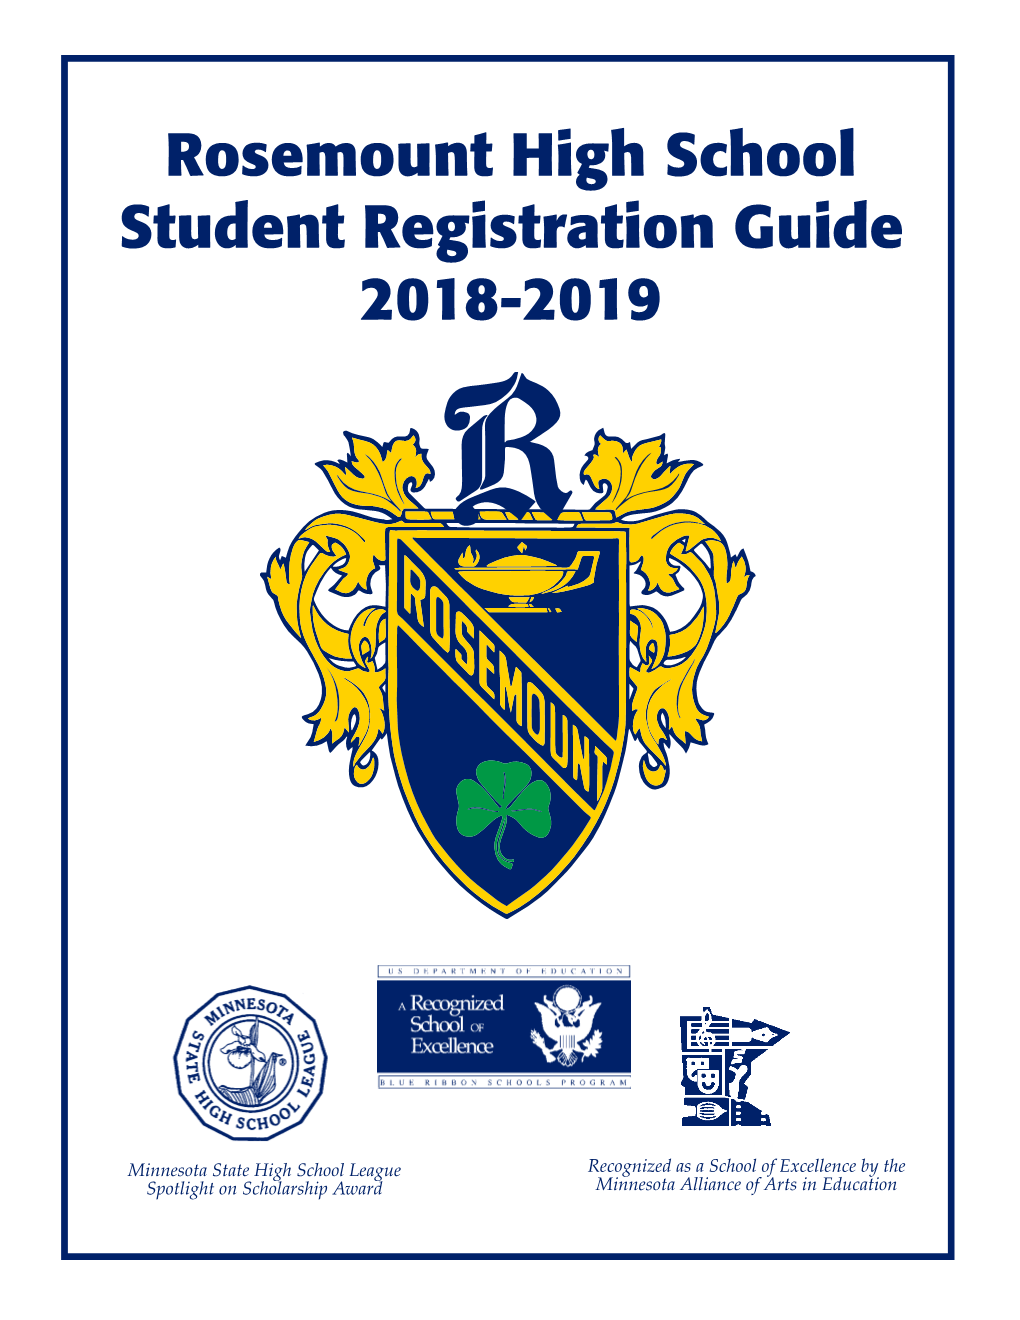 Rosemount High School Student Registration Guide 2018-2019